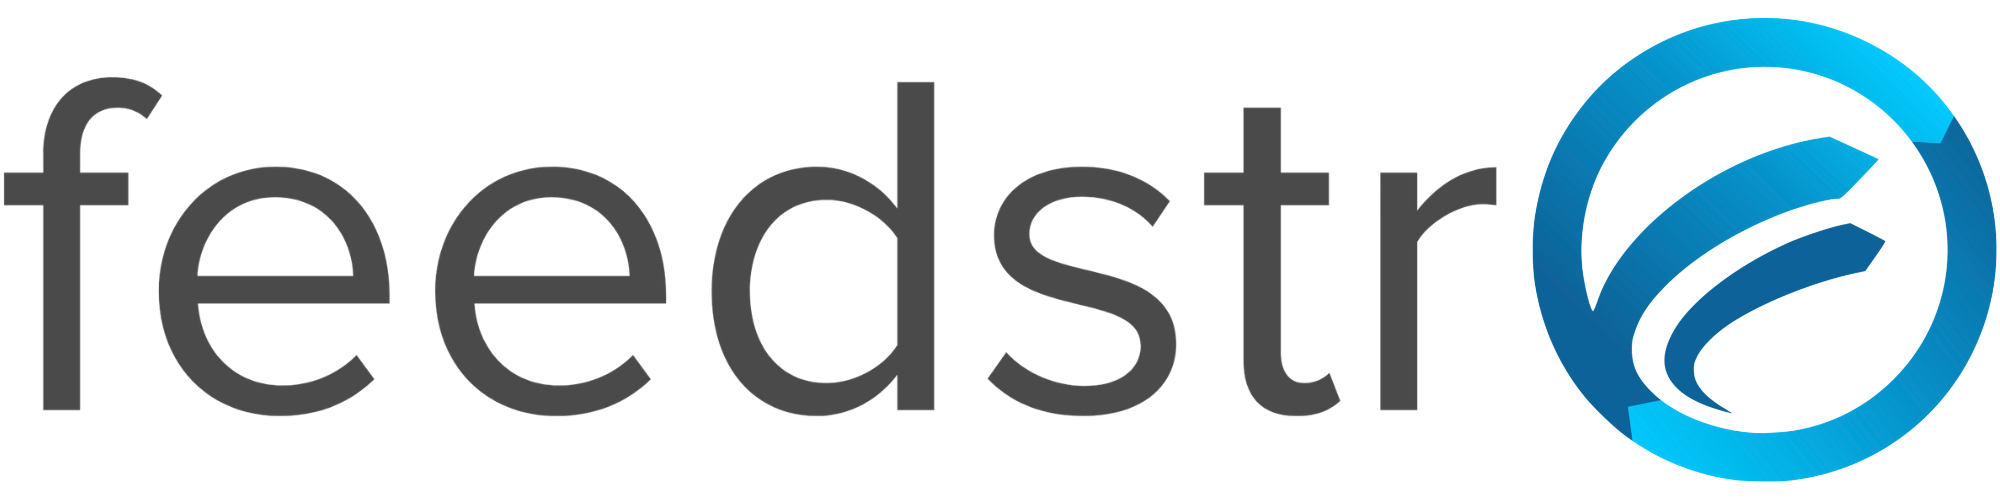 feedstr-logo